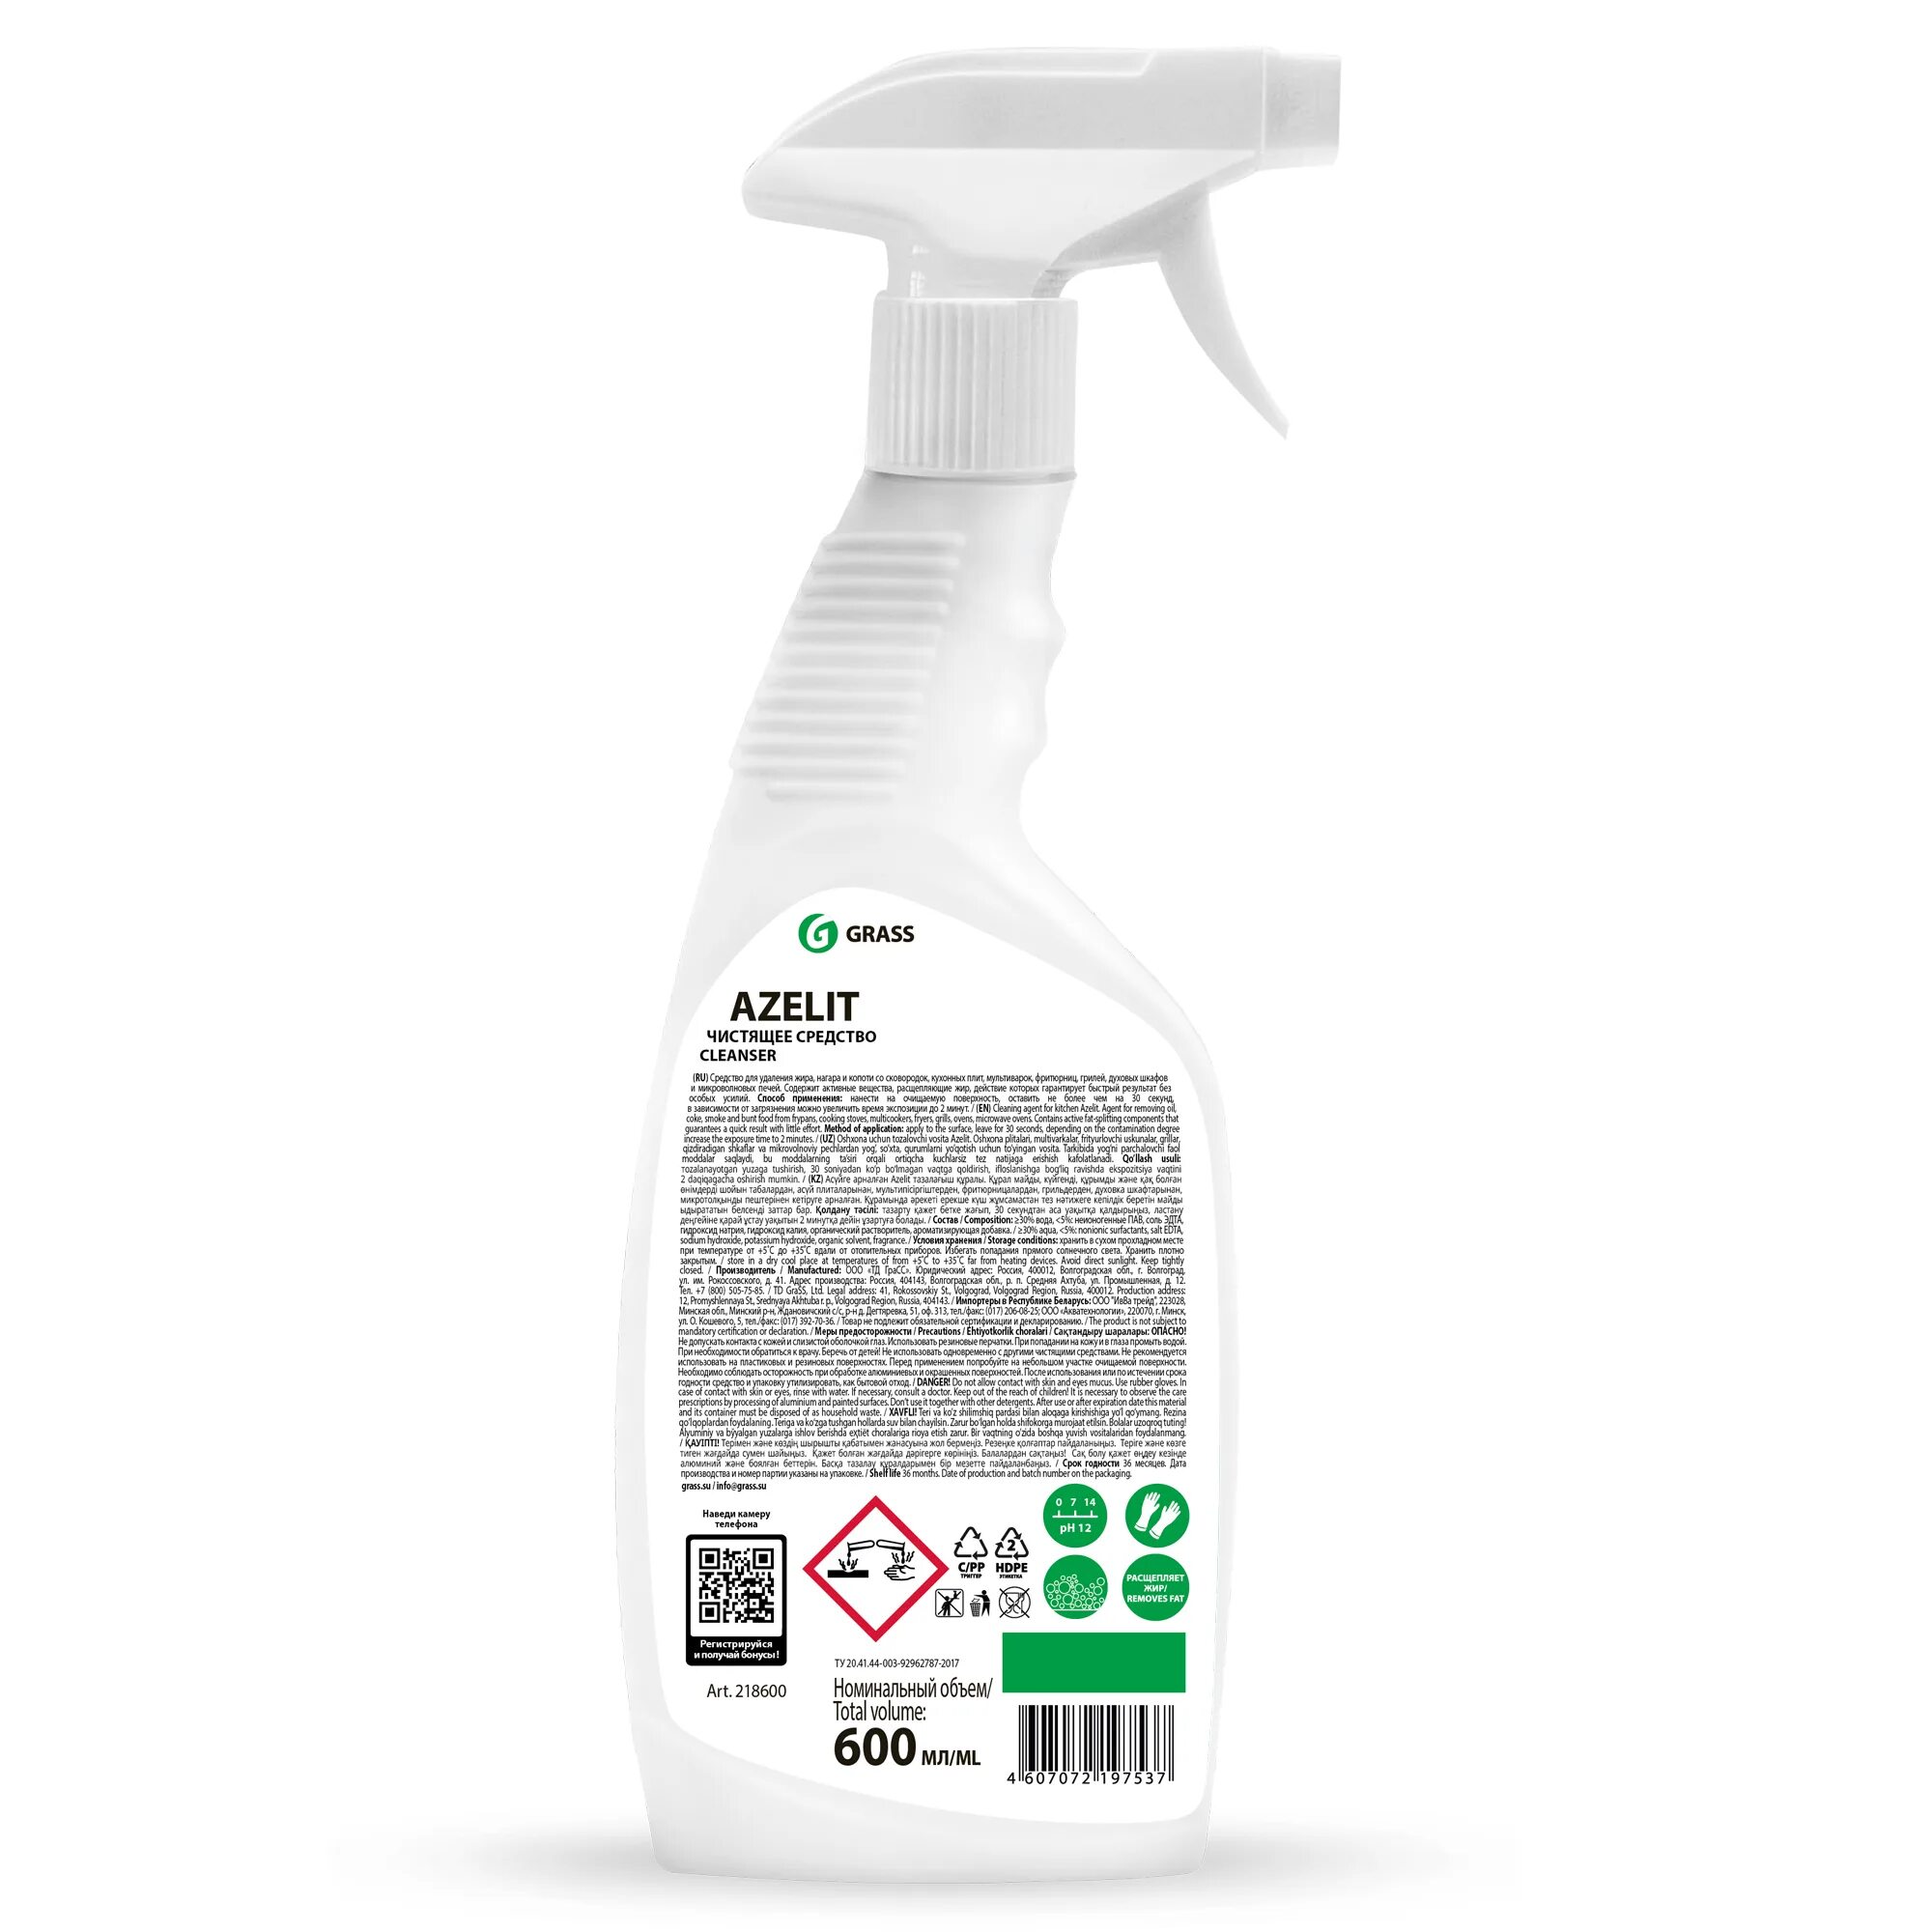 Grass Azelit Spray для стеклокерамики 600мл. Grass Azelit Spray для стеклокерамики (флакон 600мл). Средство для чистки Azelit grass анти-жир 600 мл. Grass Azelit Антижир 600мл для кухни.